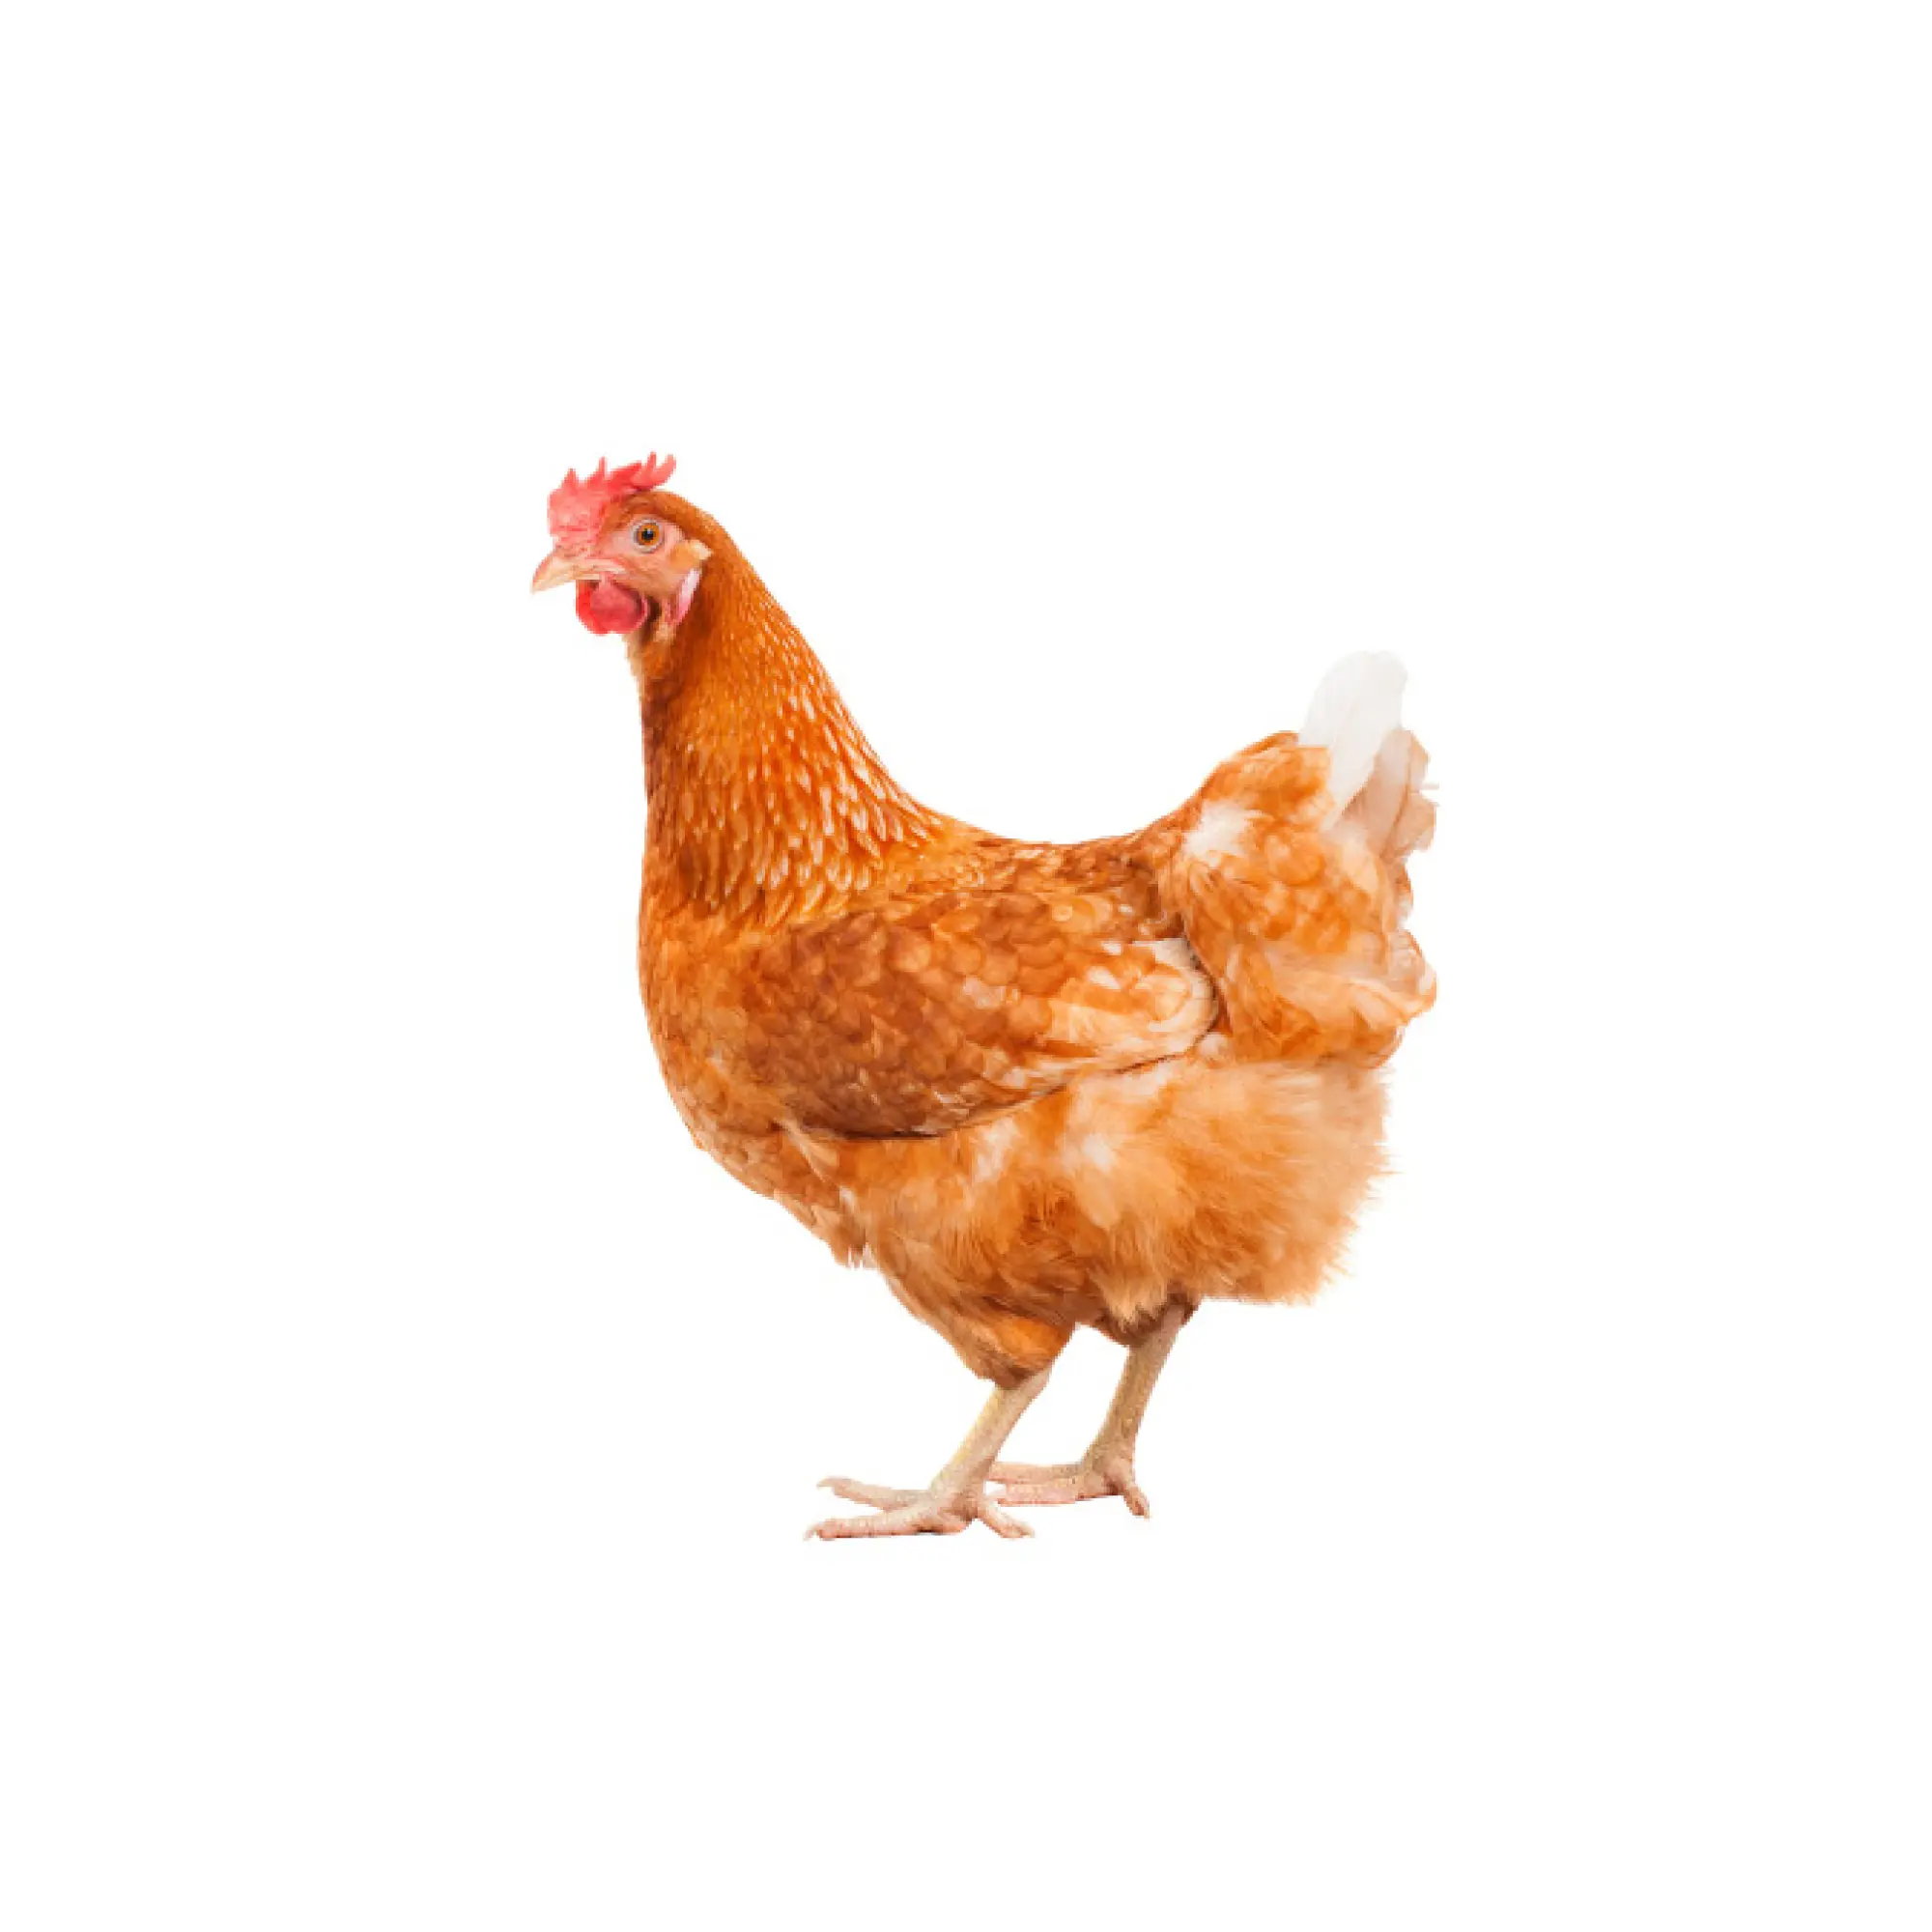 Onbemand iets Doorlaatbaarheid Kippen kopen bij Floralux - Floralux